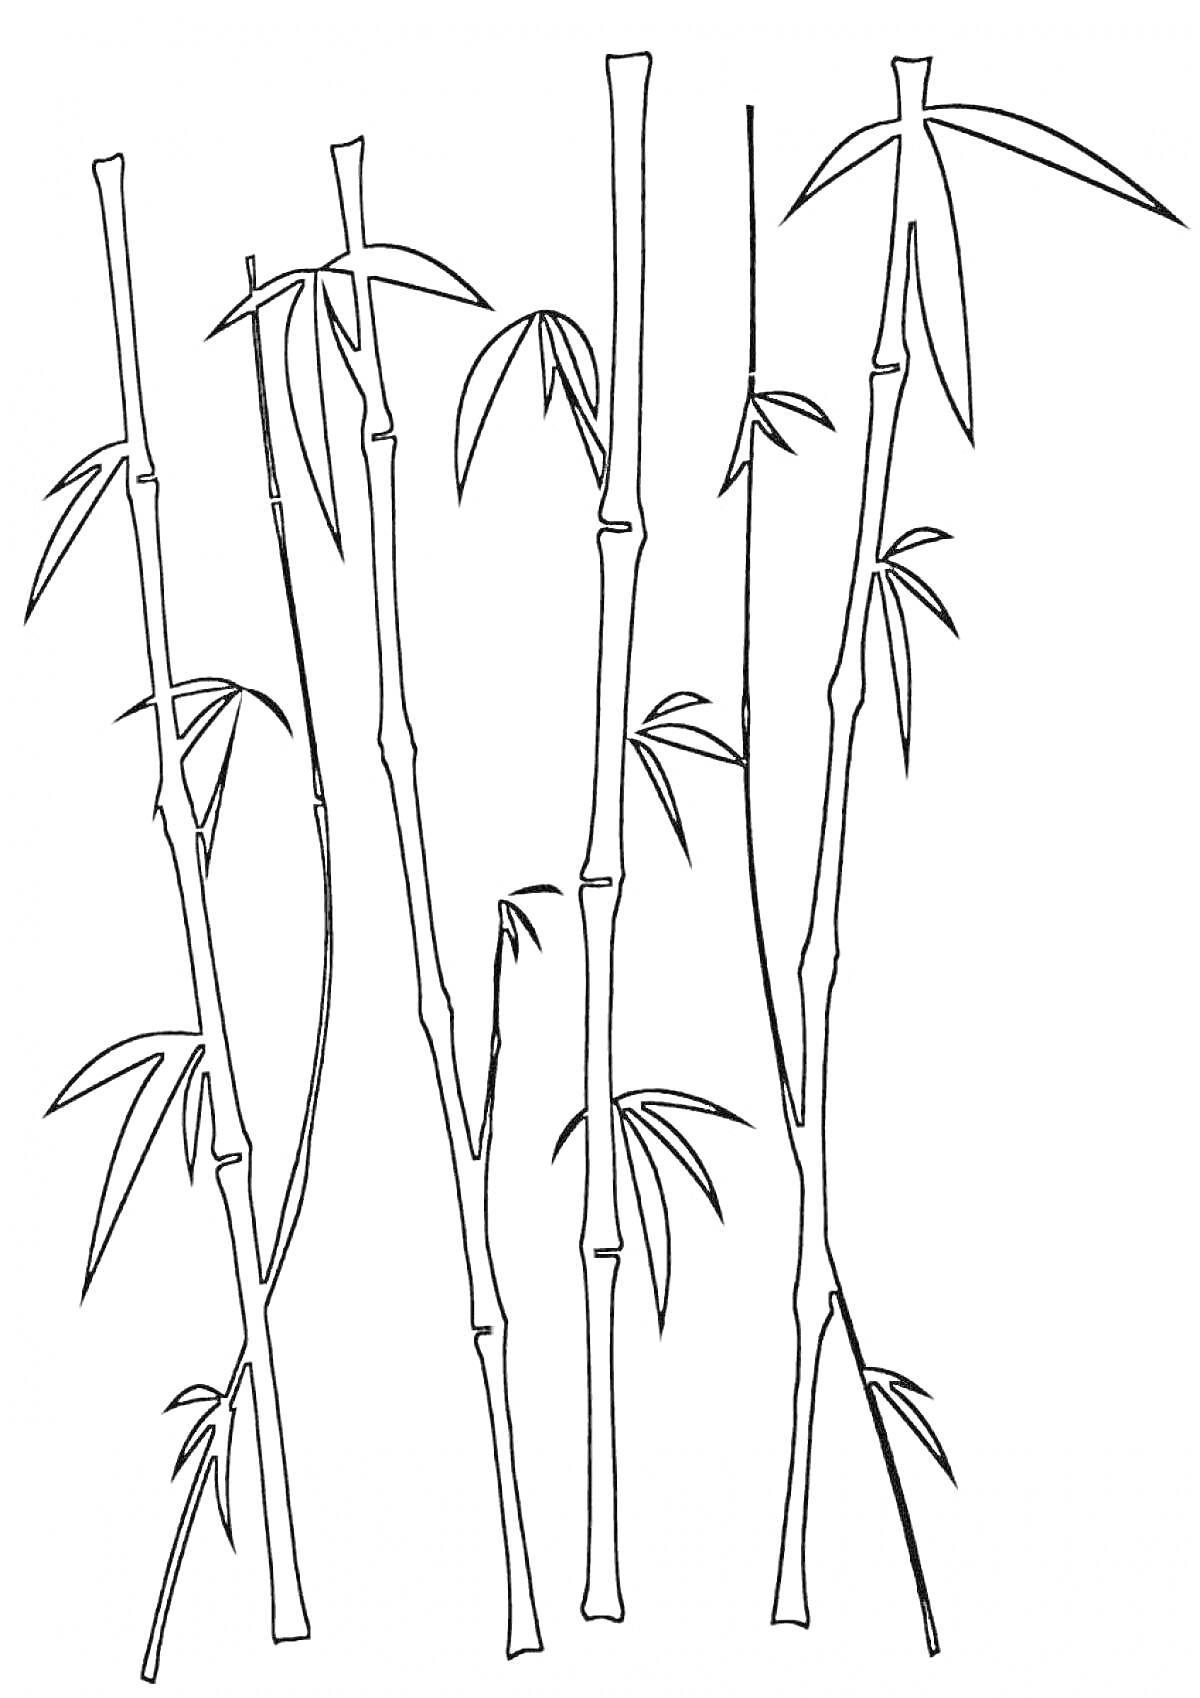 Раскраска Бамбуковые стебли с листьями